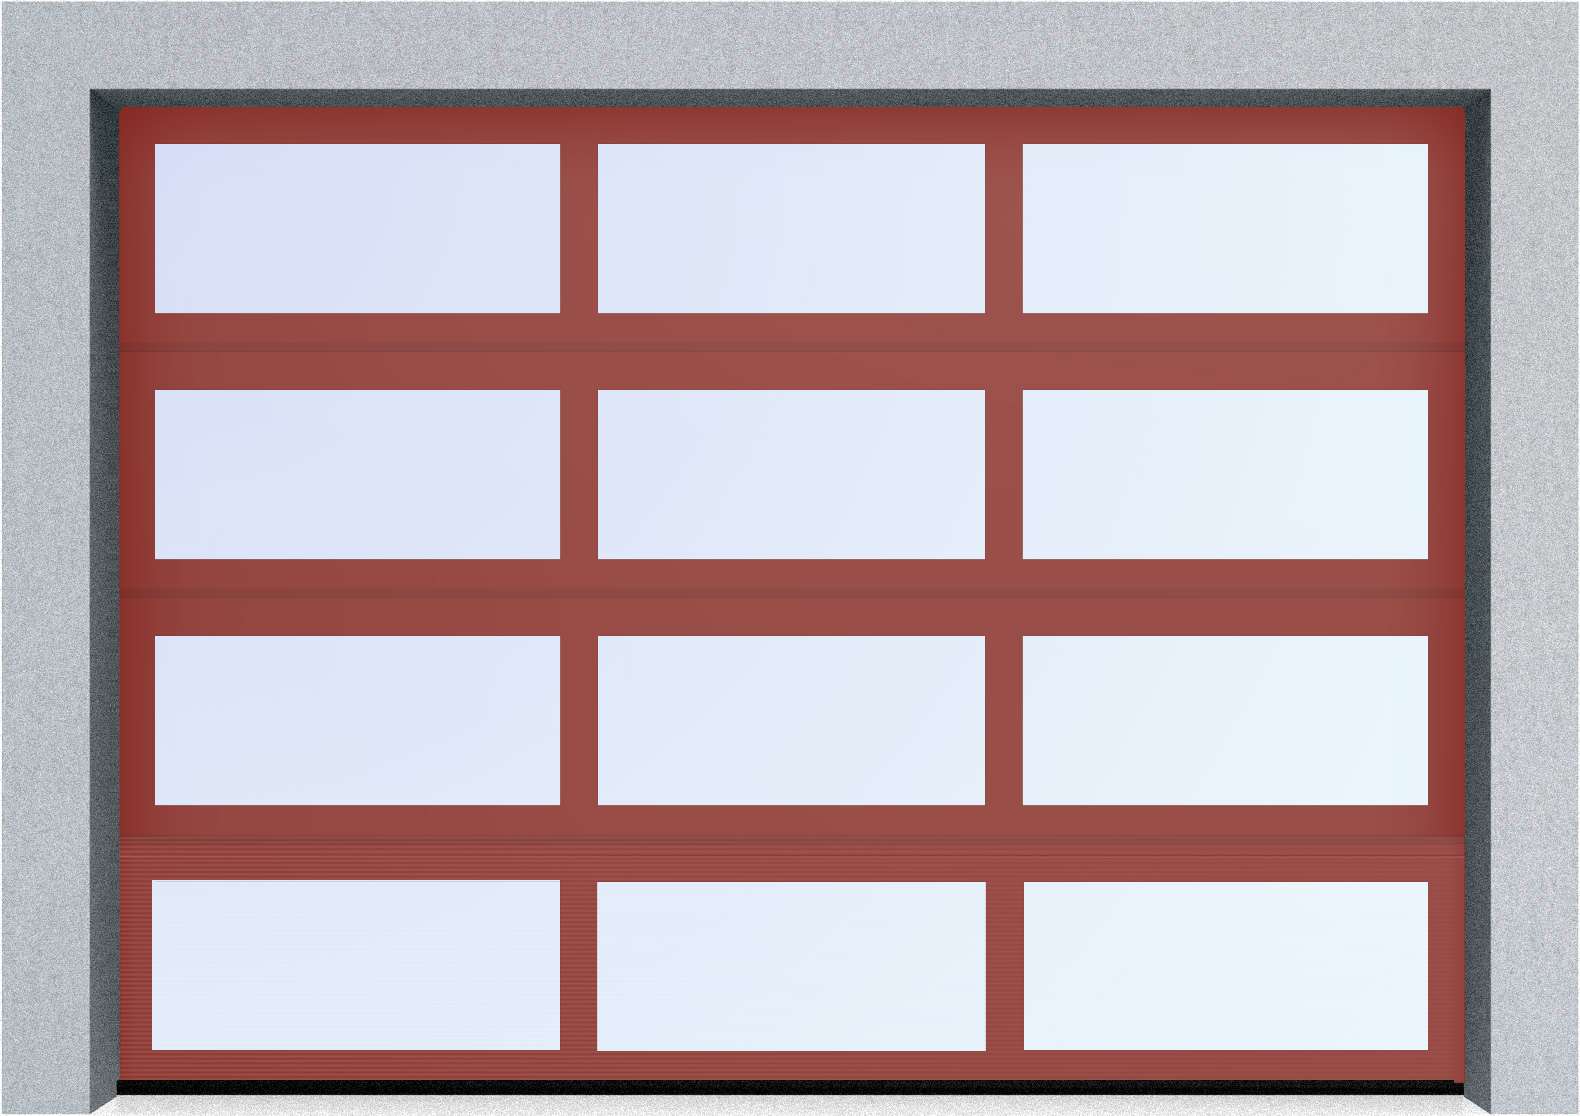  Секционные панорамные ворота серии AluTrend (АЛП) 2875х2125 нижняя панель стандартные цвета, фото 2 